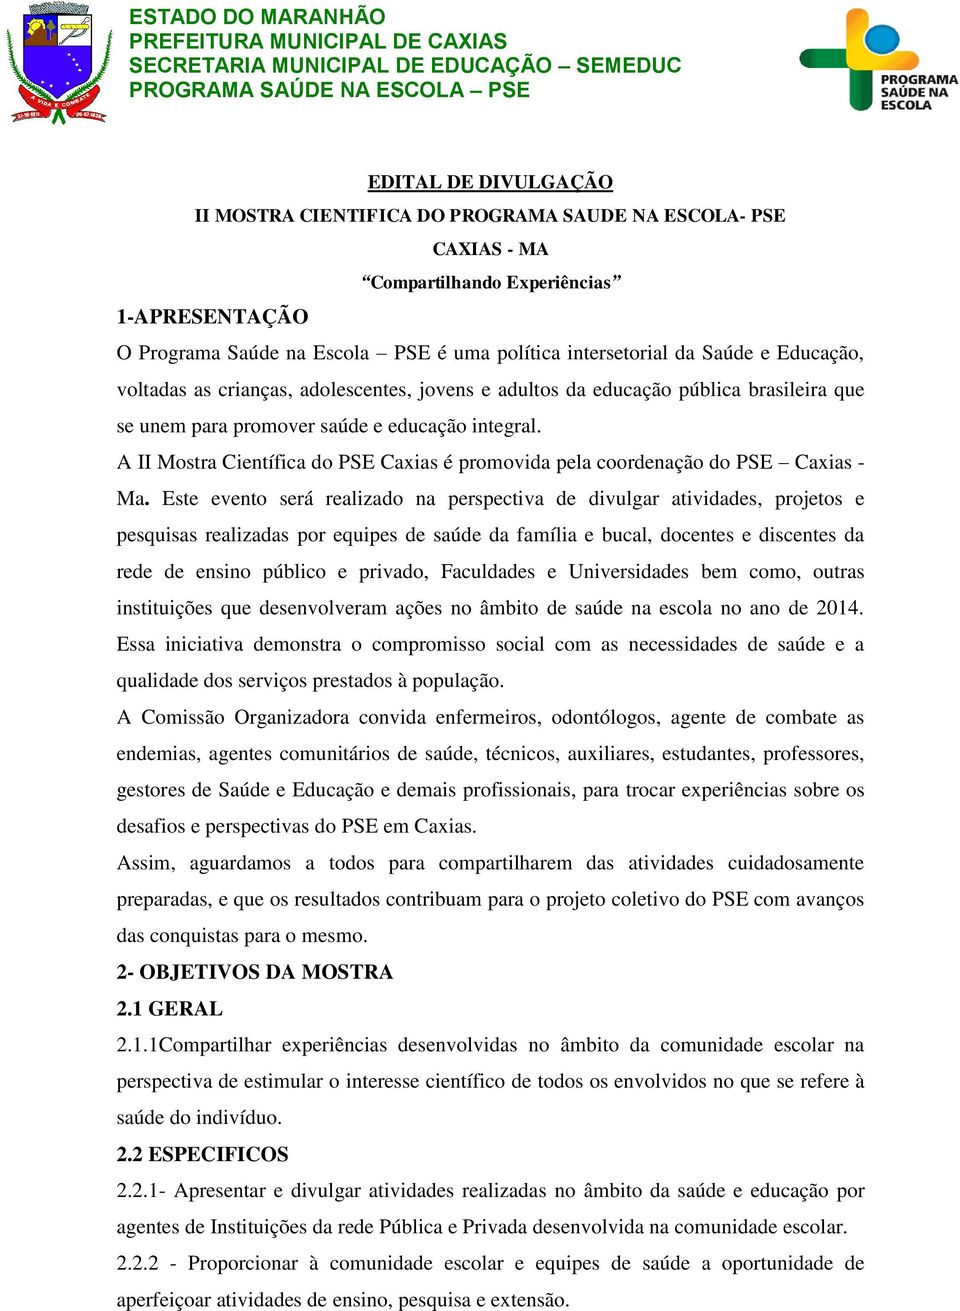 A II Mostra Científica do PSE Caxias é promovida pela coordenação do PSE Caxias - Ma.